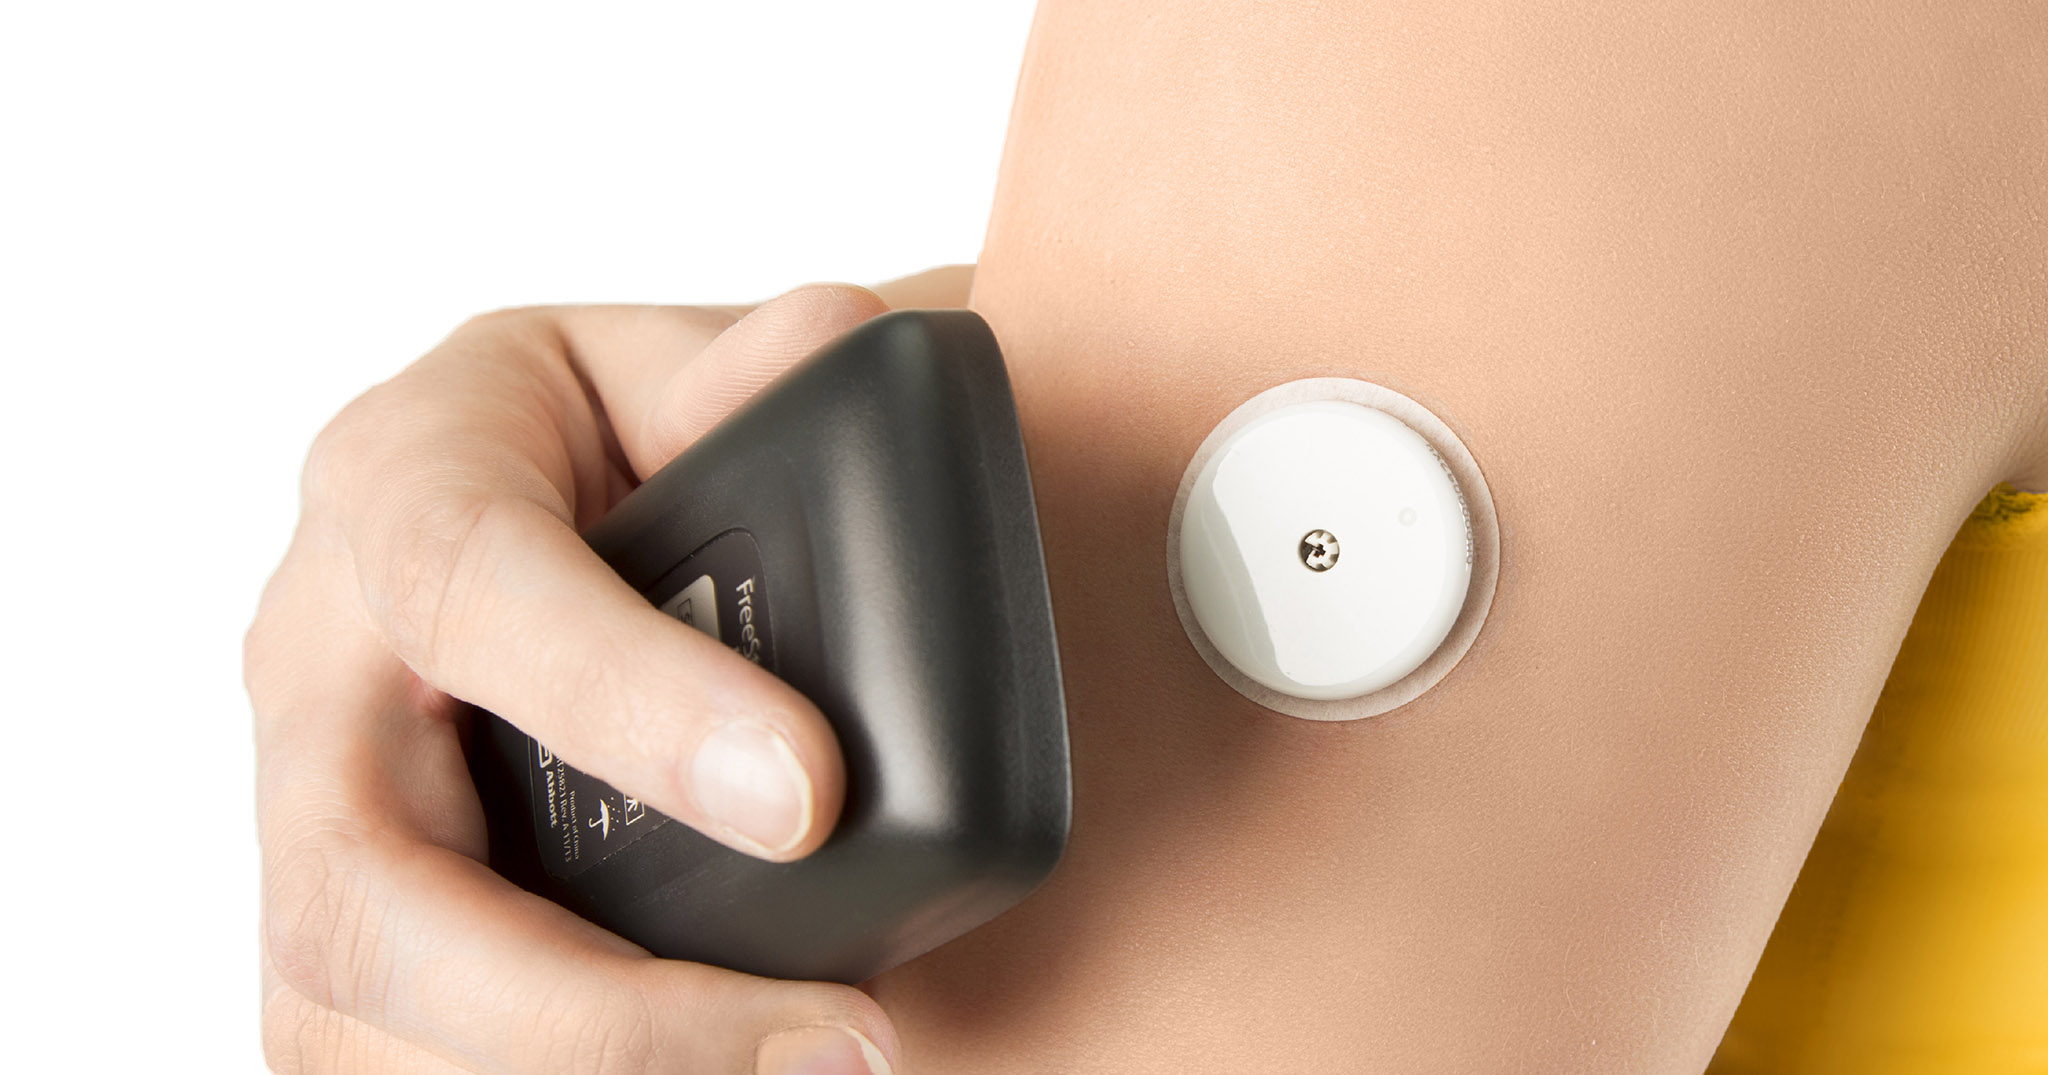 FreeStyle Libre Flash, sản phẩm của Abbott giúp đo lượng glucose trong máu mà không cần hiệu chuẩn